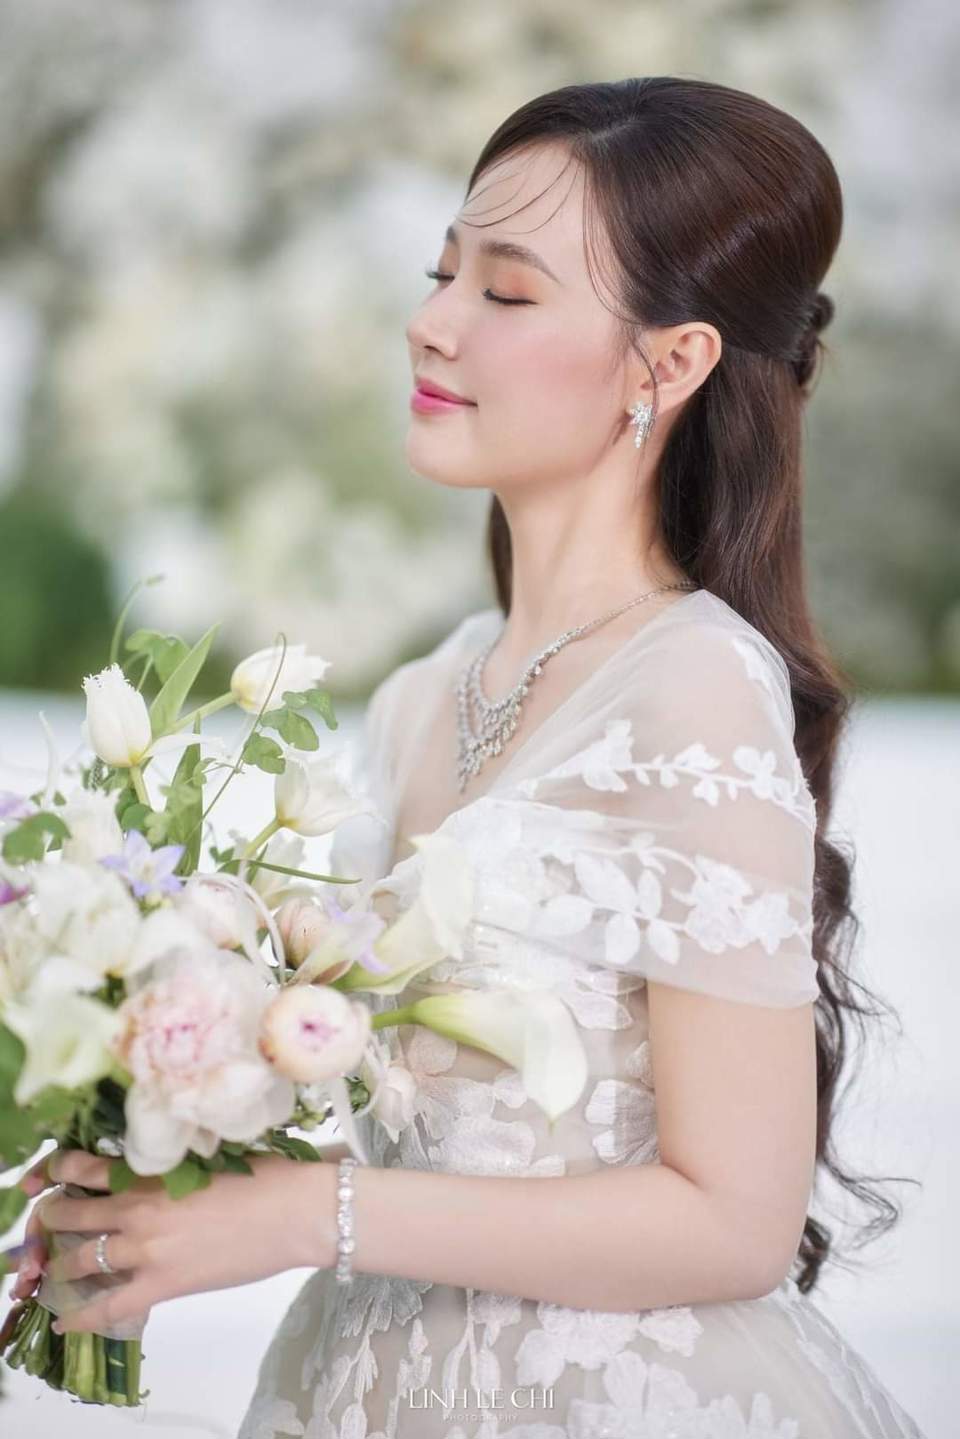 Dàn sao Việt dự đám cưới của Midu và thiếu gia kém tuổi - Ảnh 17